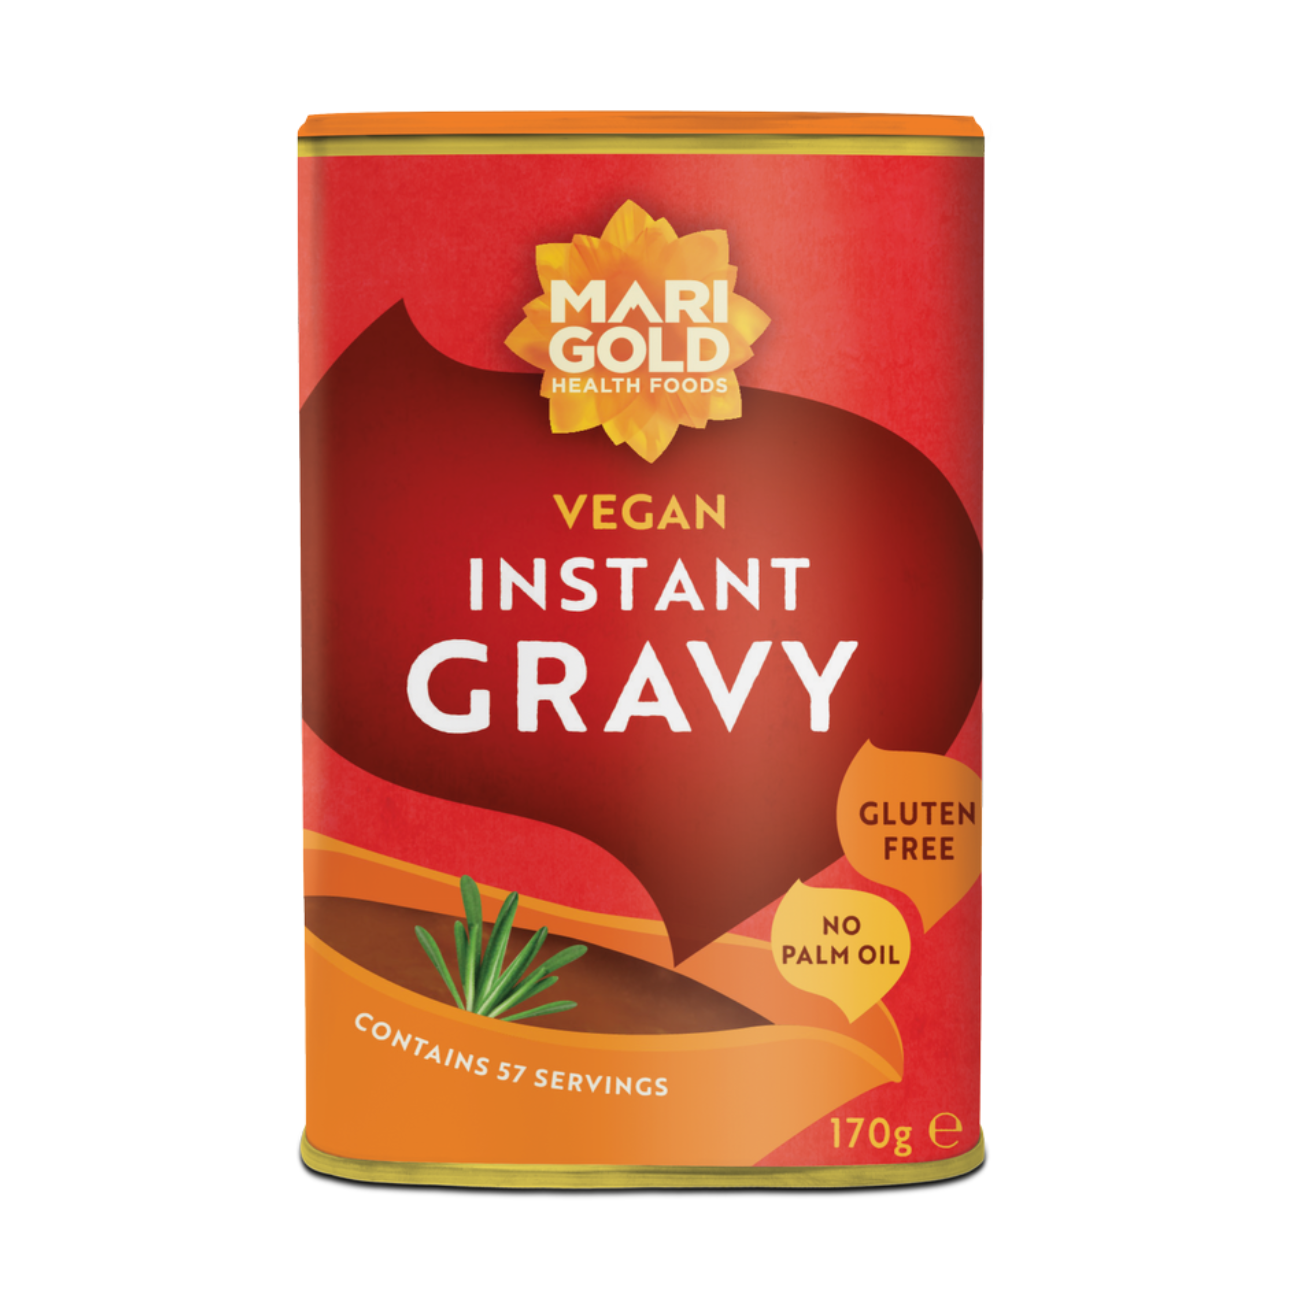 Gravy Granules Instant 170g